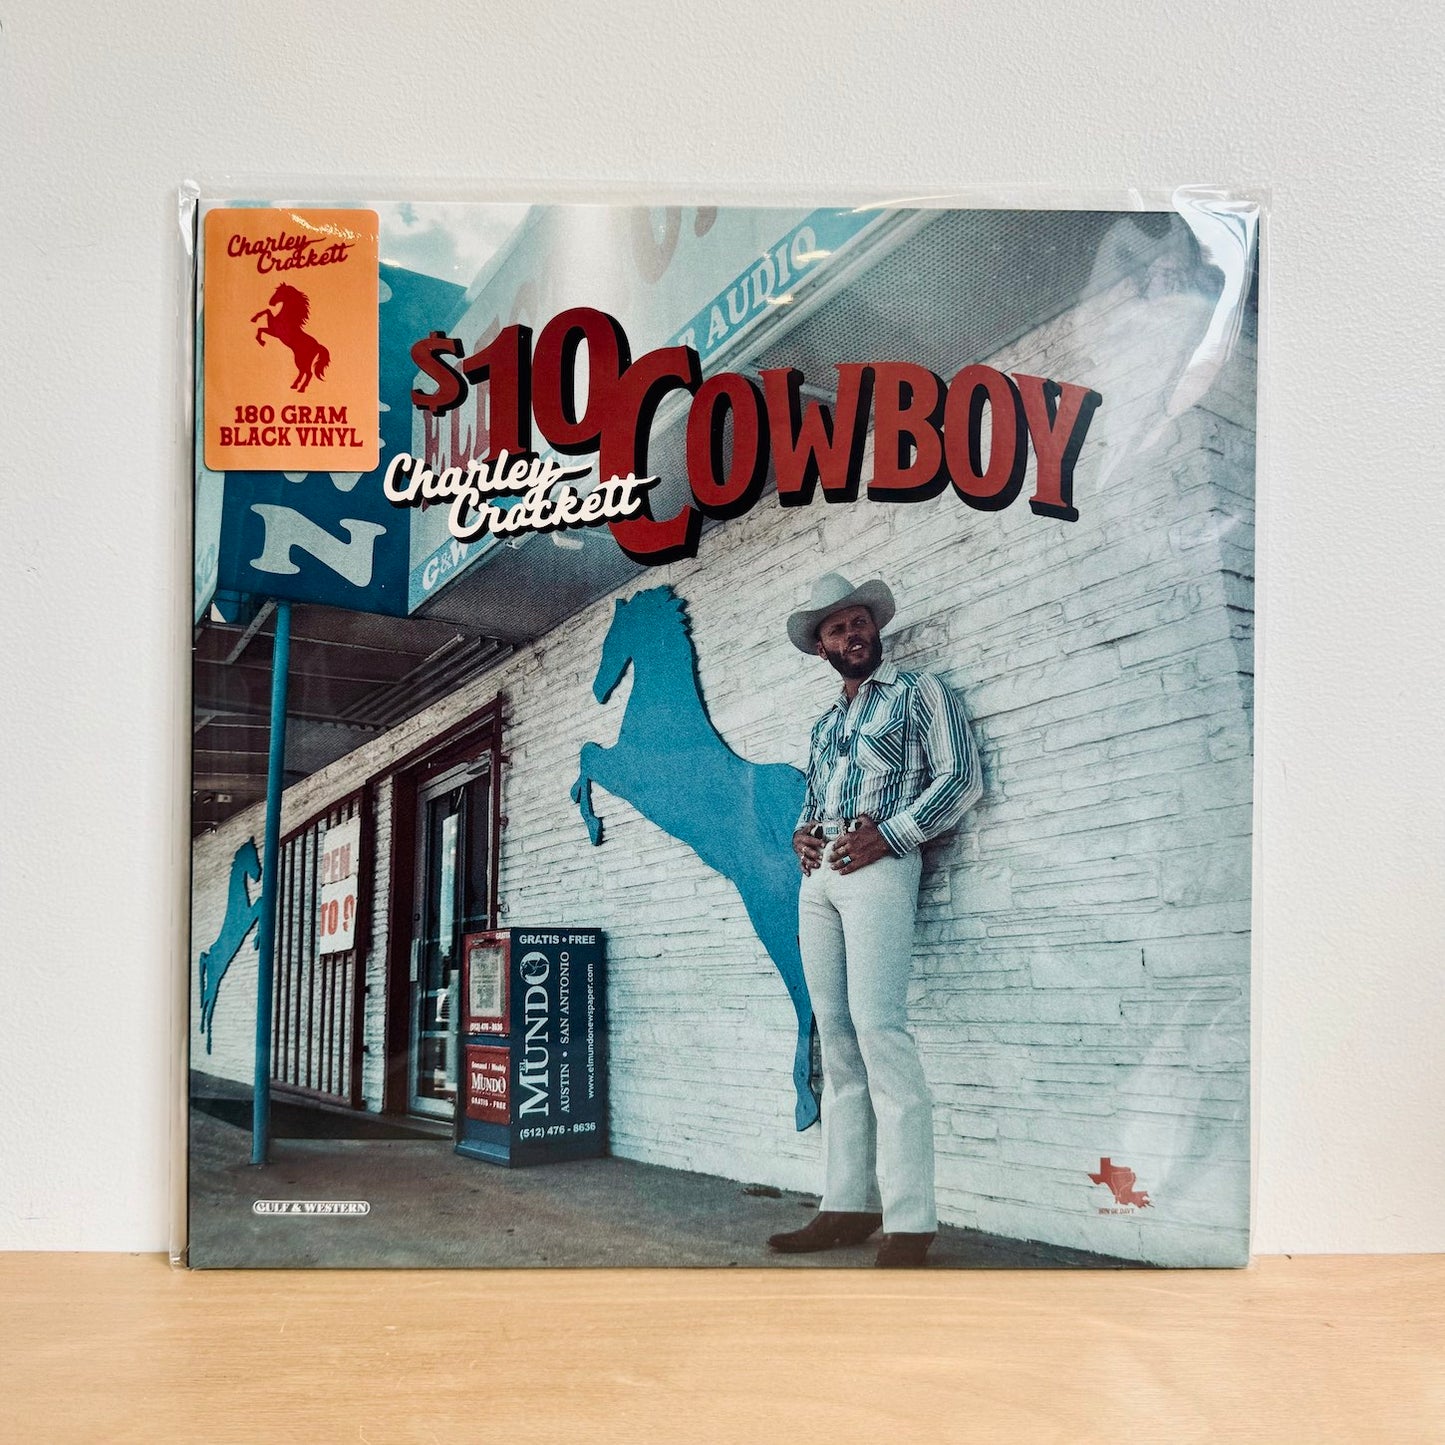 Charley Crockett - $10 Cowboy. LP